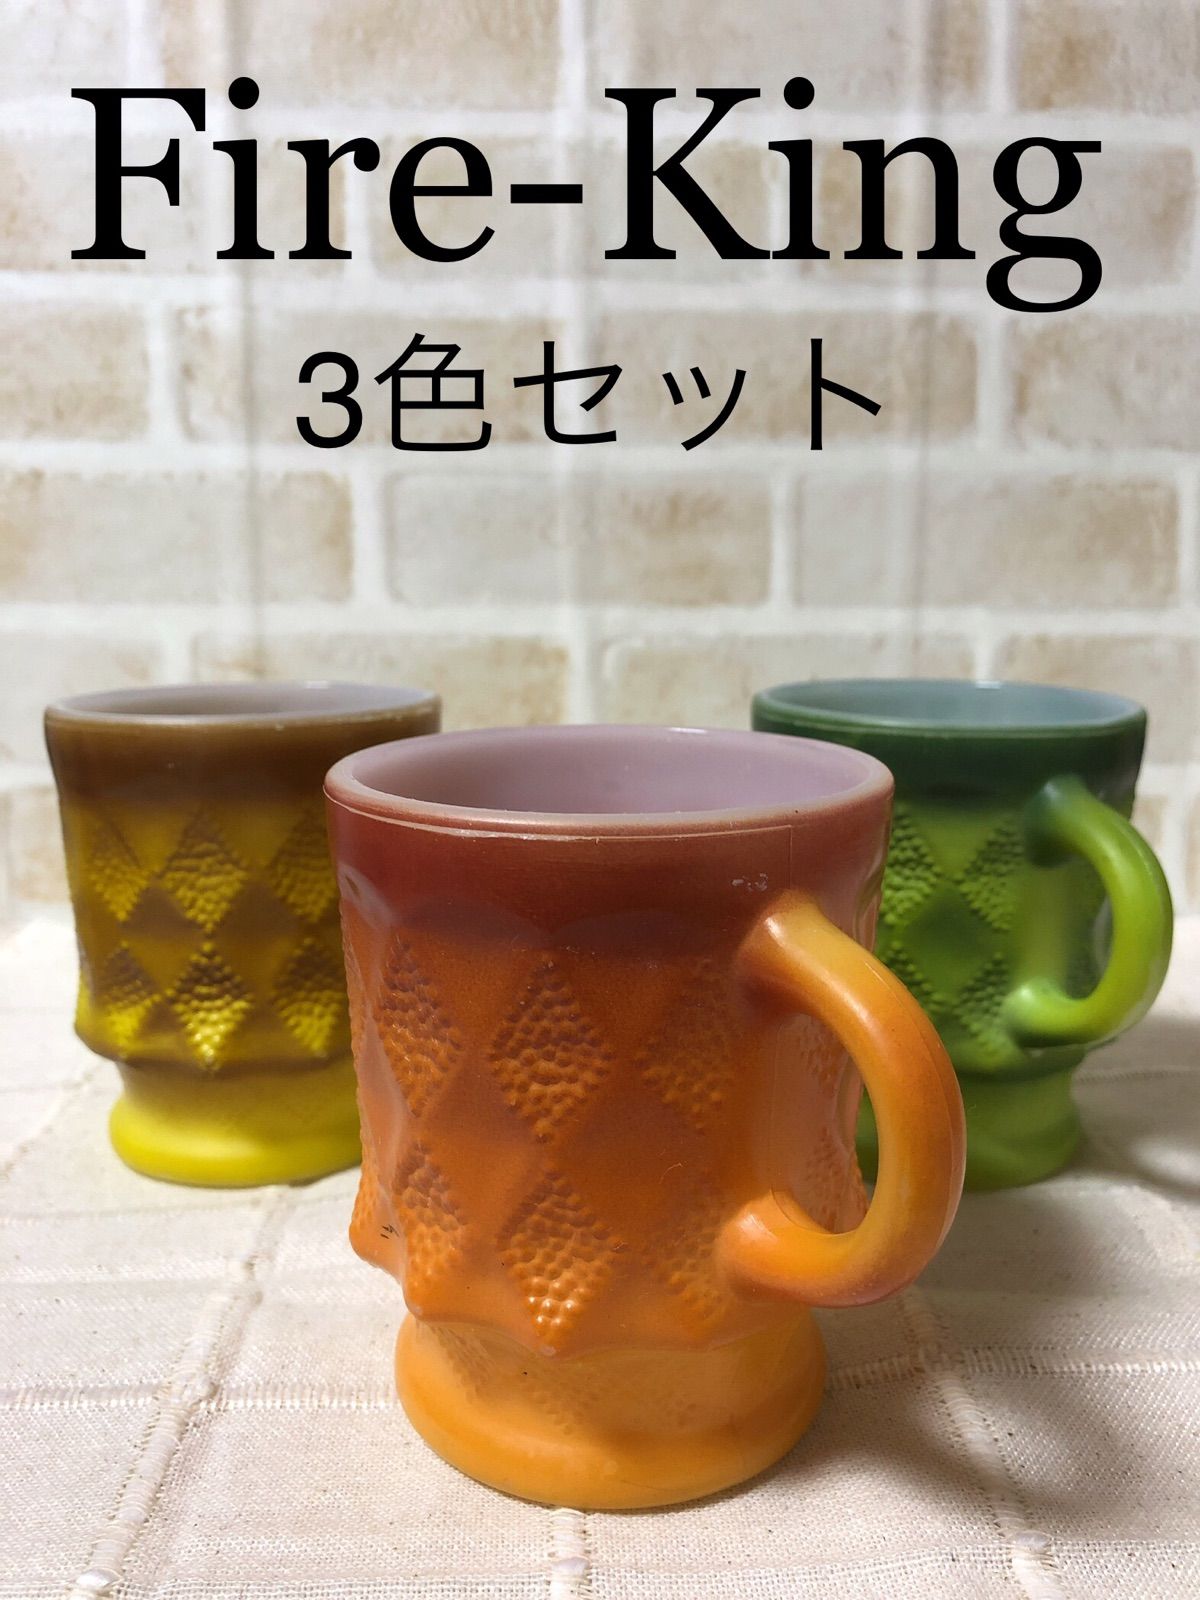 Fire-King キンバリー3色セット ヴィンテージ - メルカリ